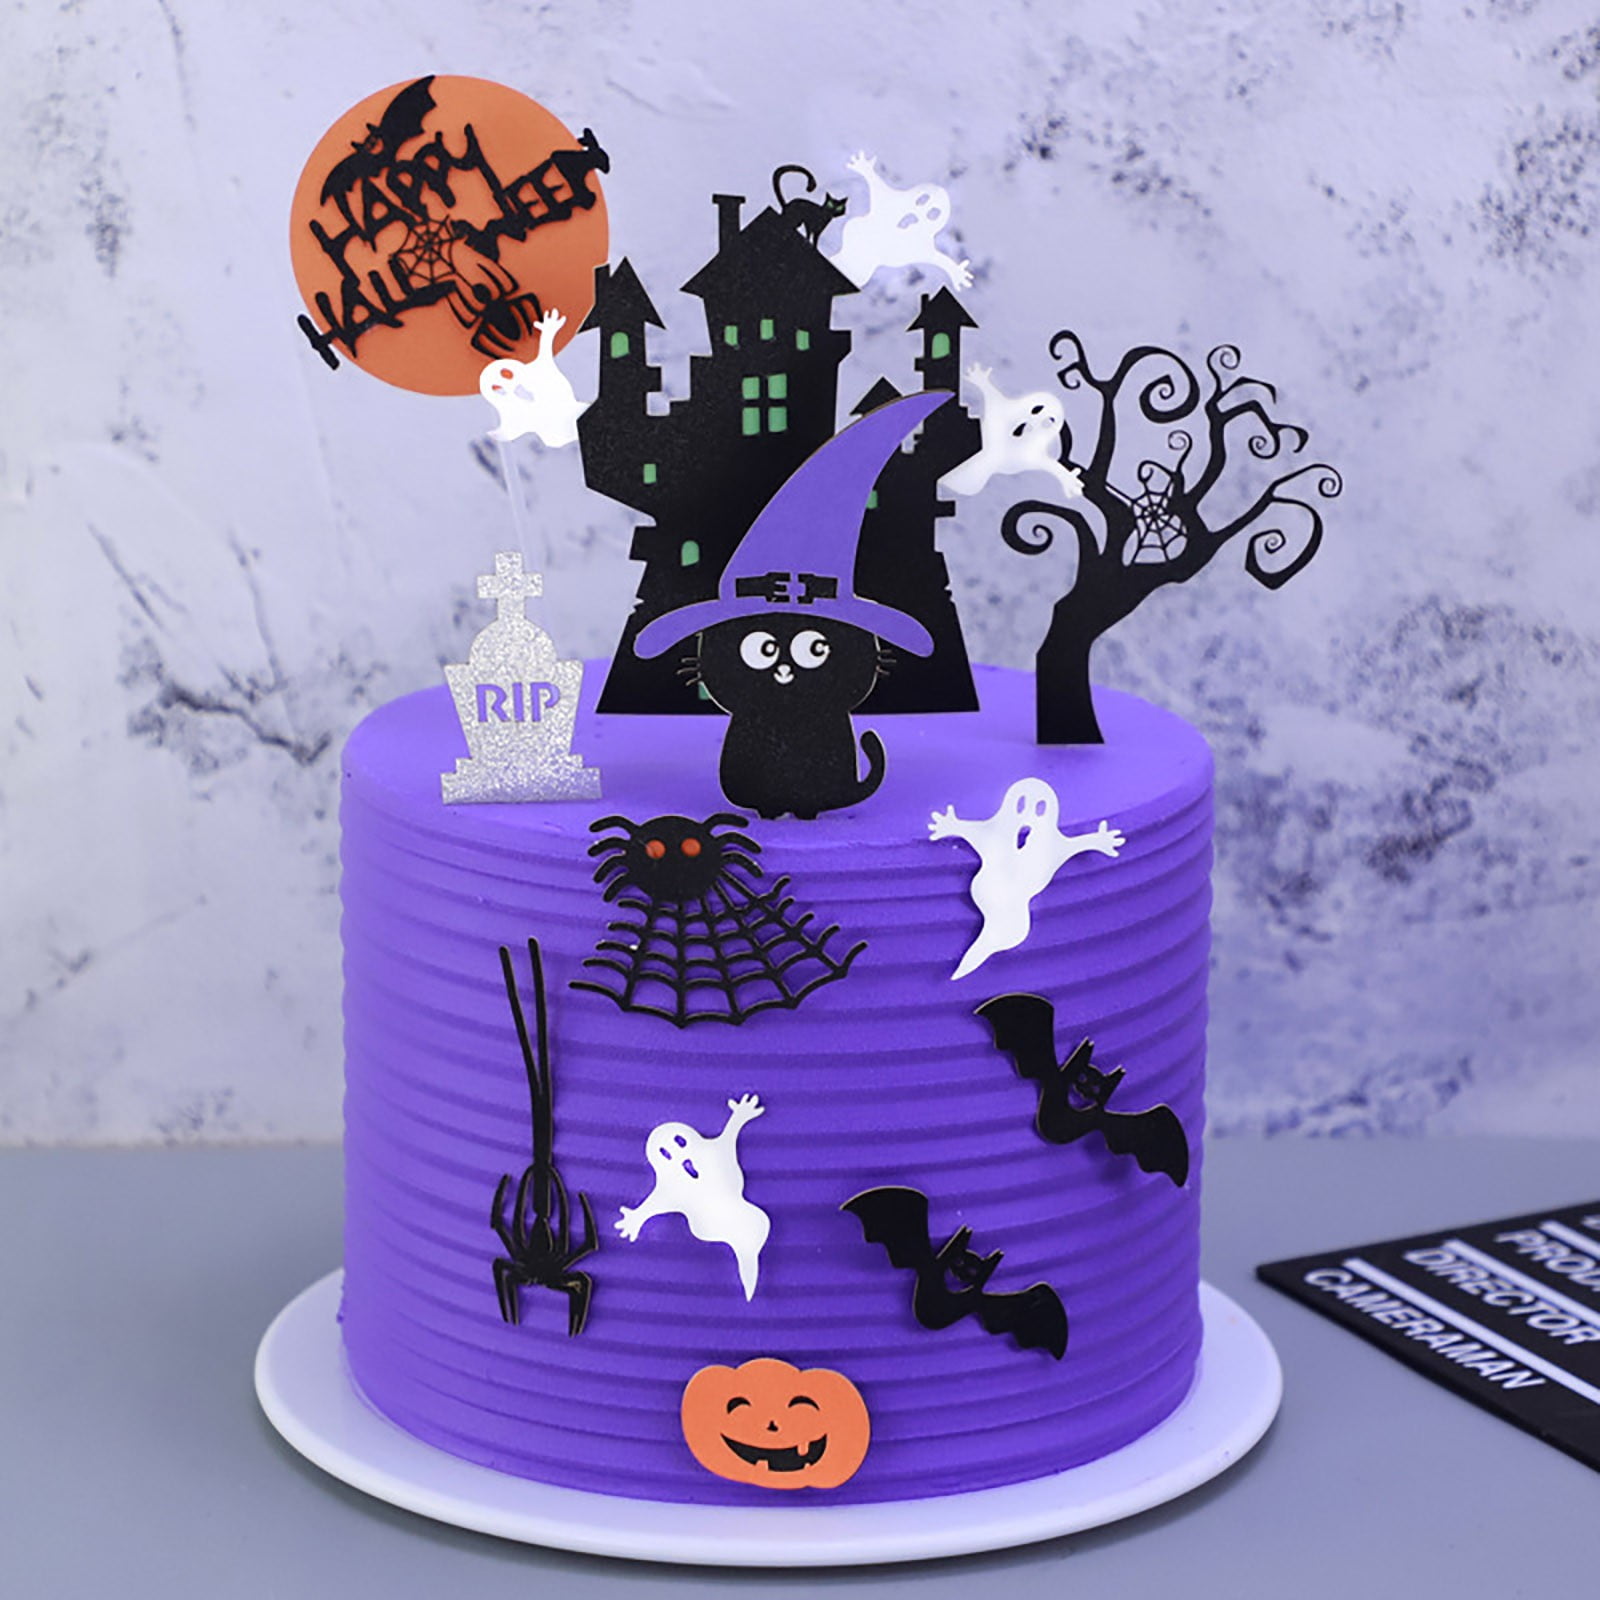 Best Halloween cakes - 30 halloween cake ideas